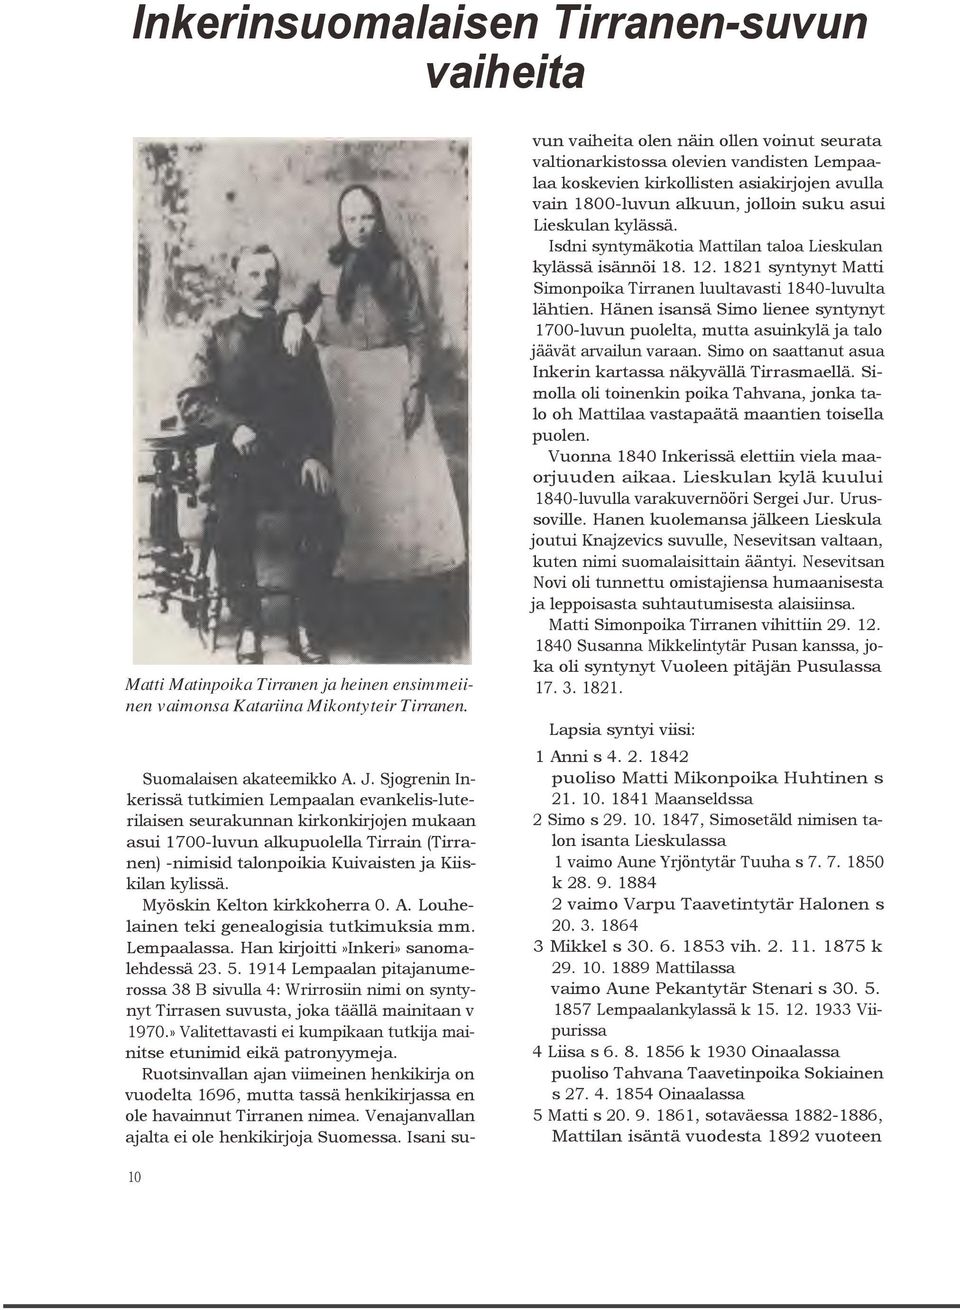 Myöskin Kelton kirkkoherra 0. A. Louhelainen teki genealogisia tutkimuksia mm. Lempaalassa. Han kirjoitti»inkeri» sanomalehdessä 23. 5.